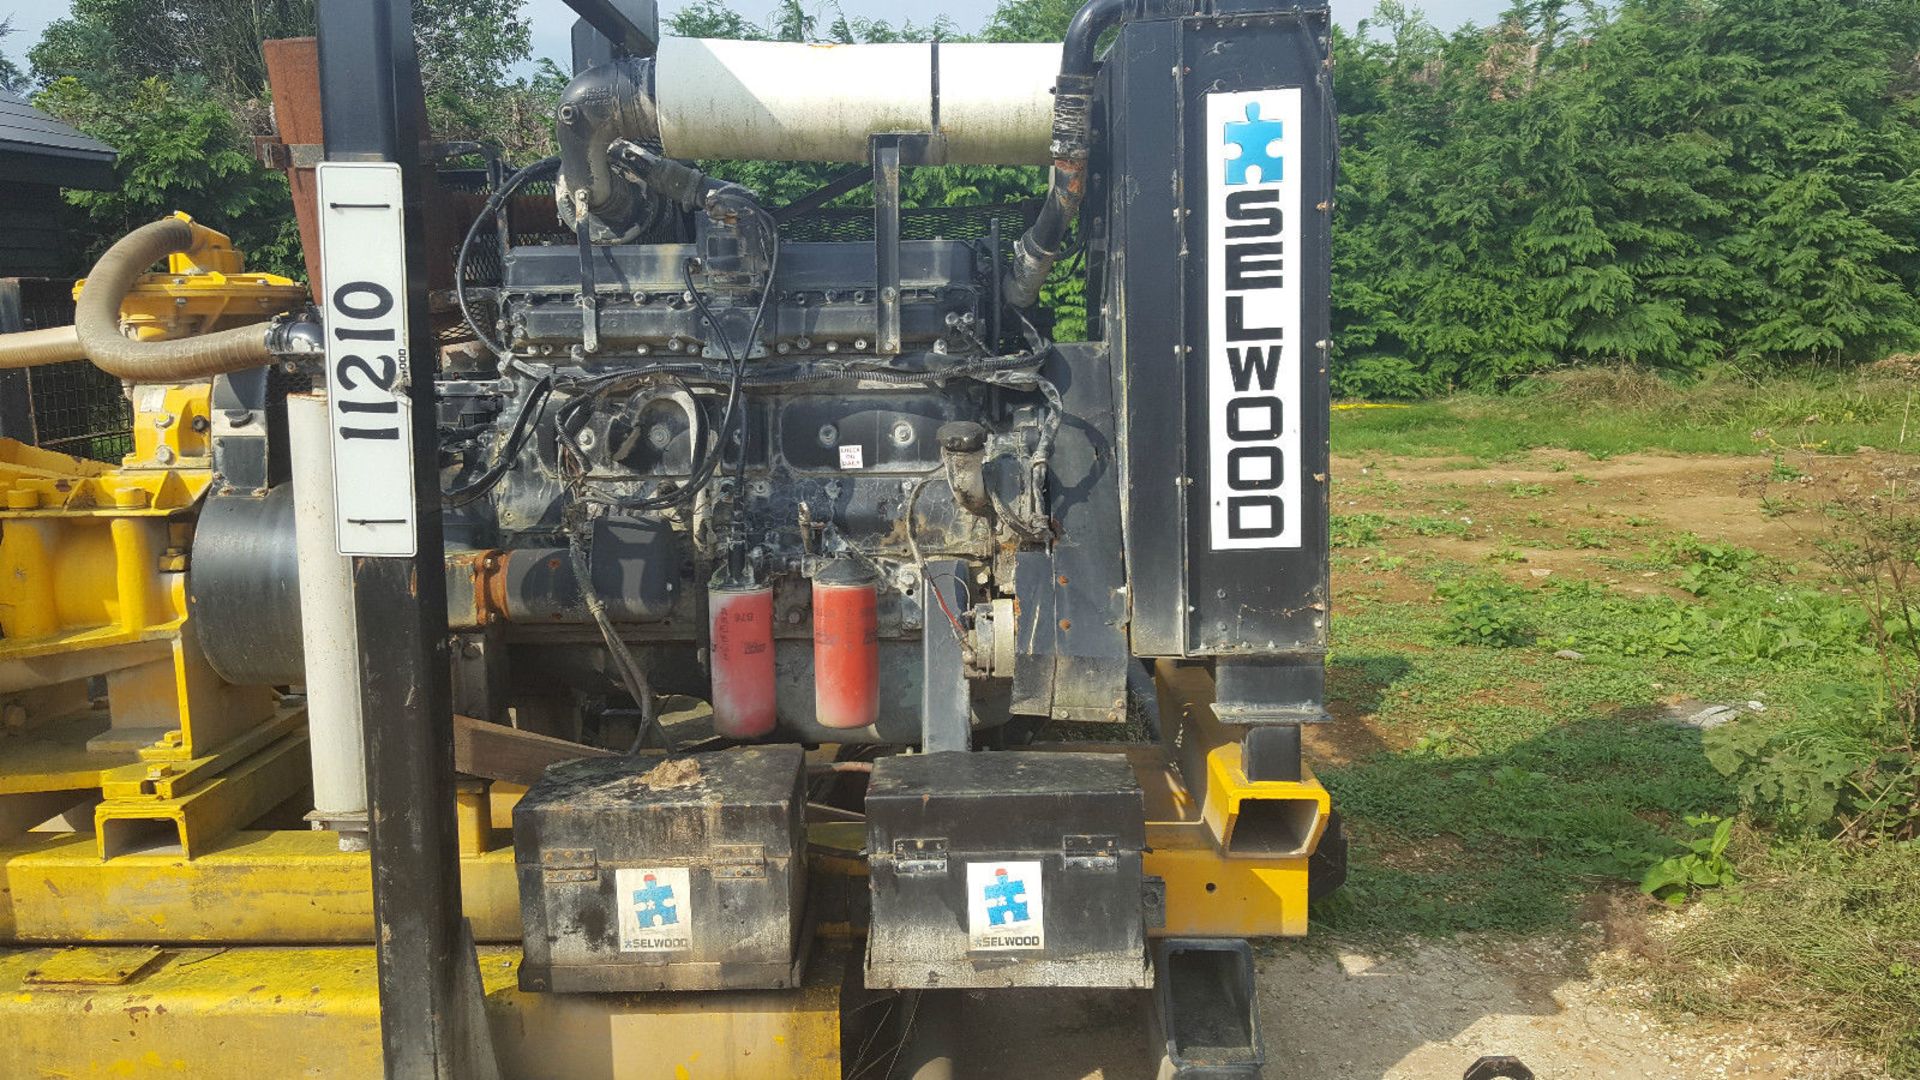 Selwood High Head H150 Industrial Dewatering Pump Diesel - Image 2 of 7